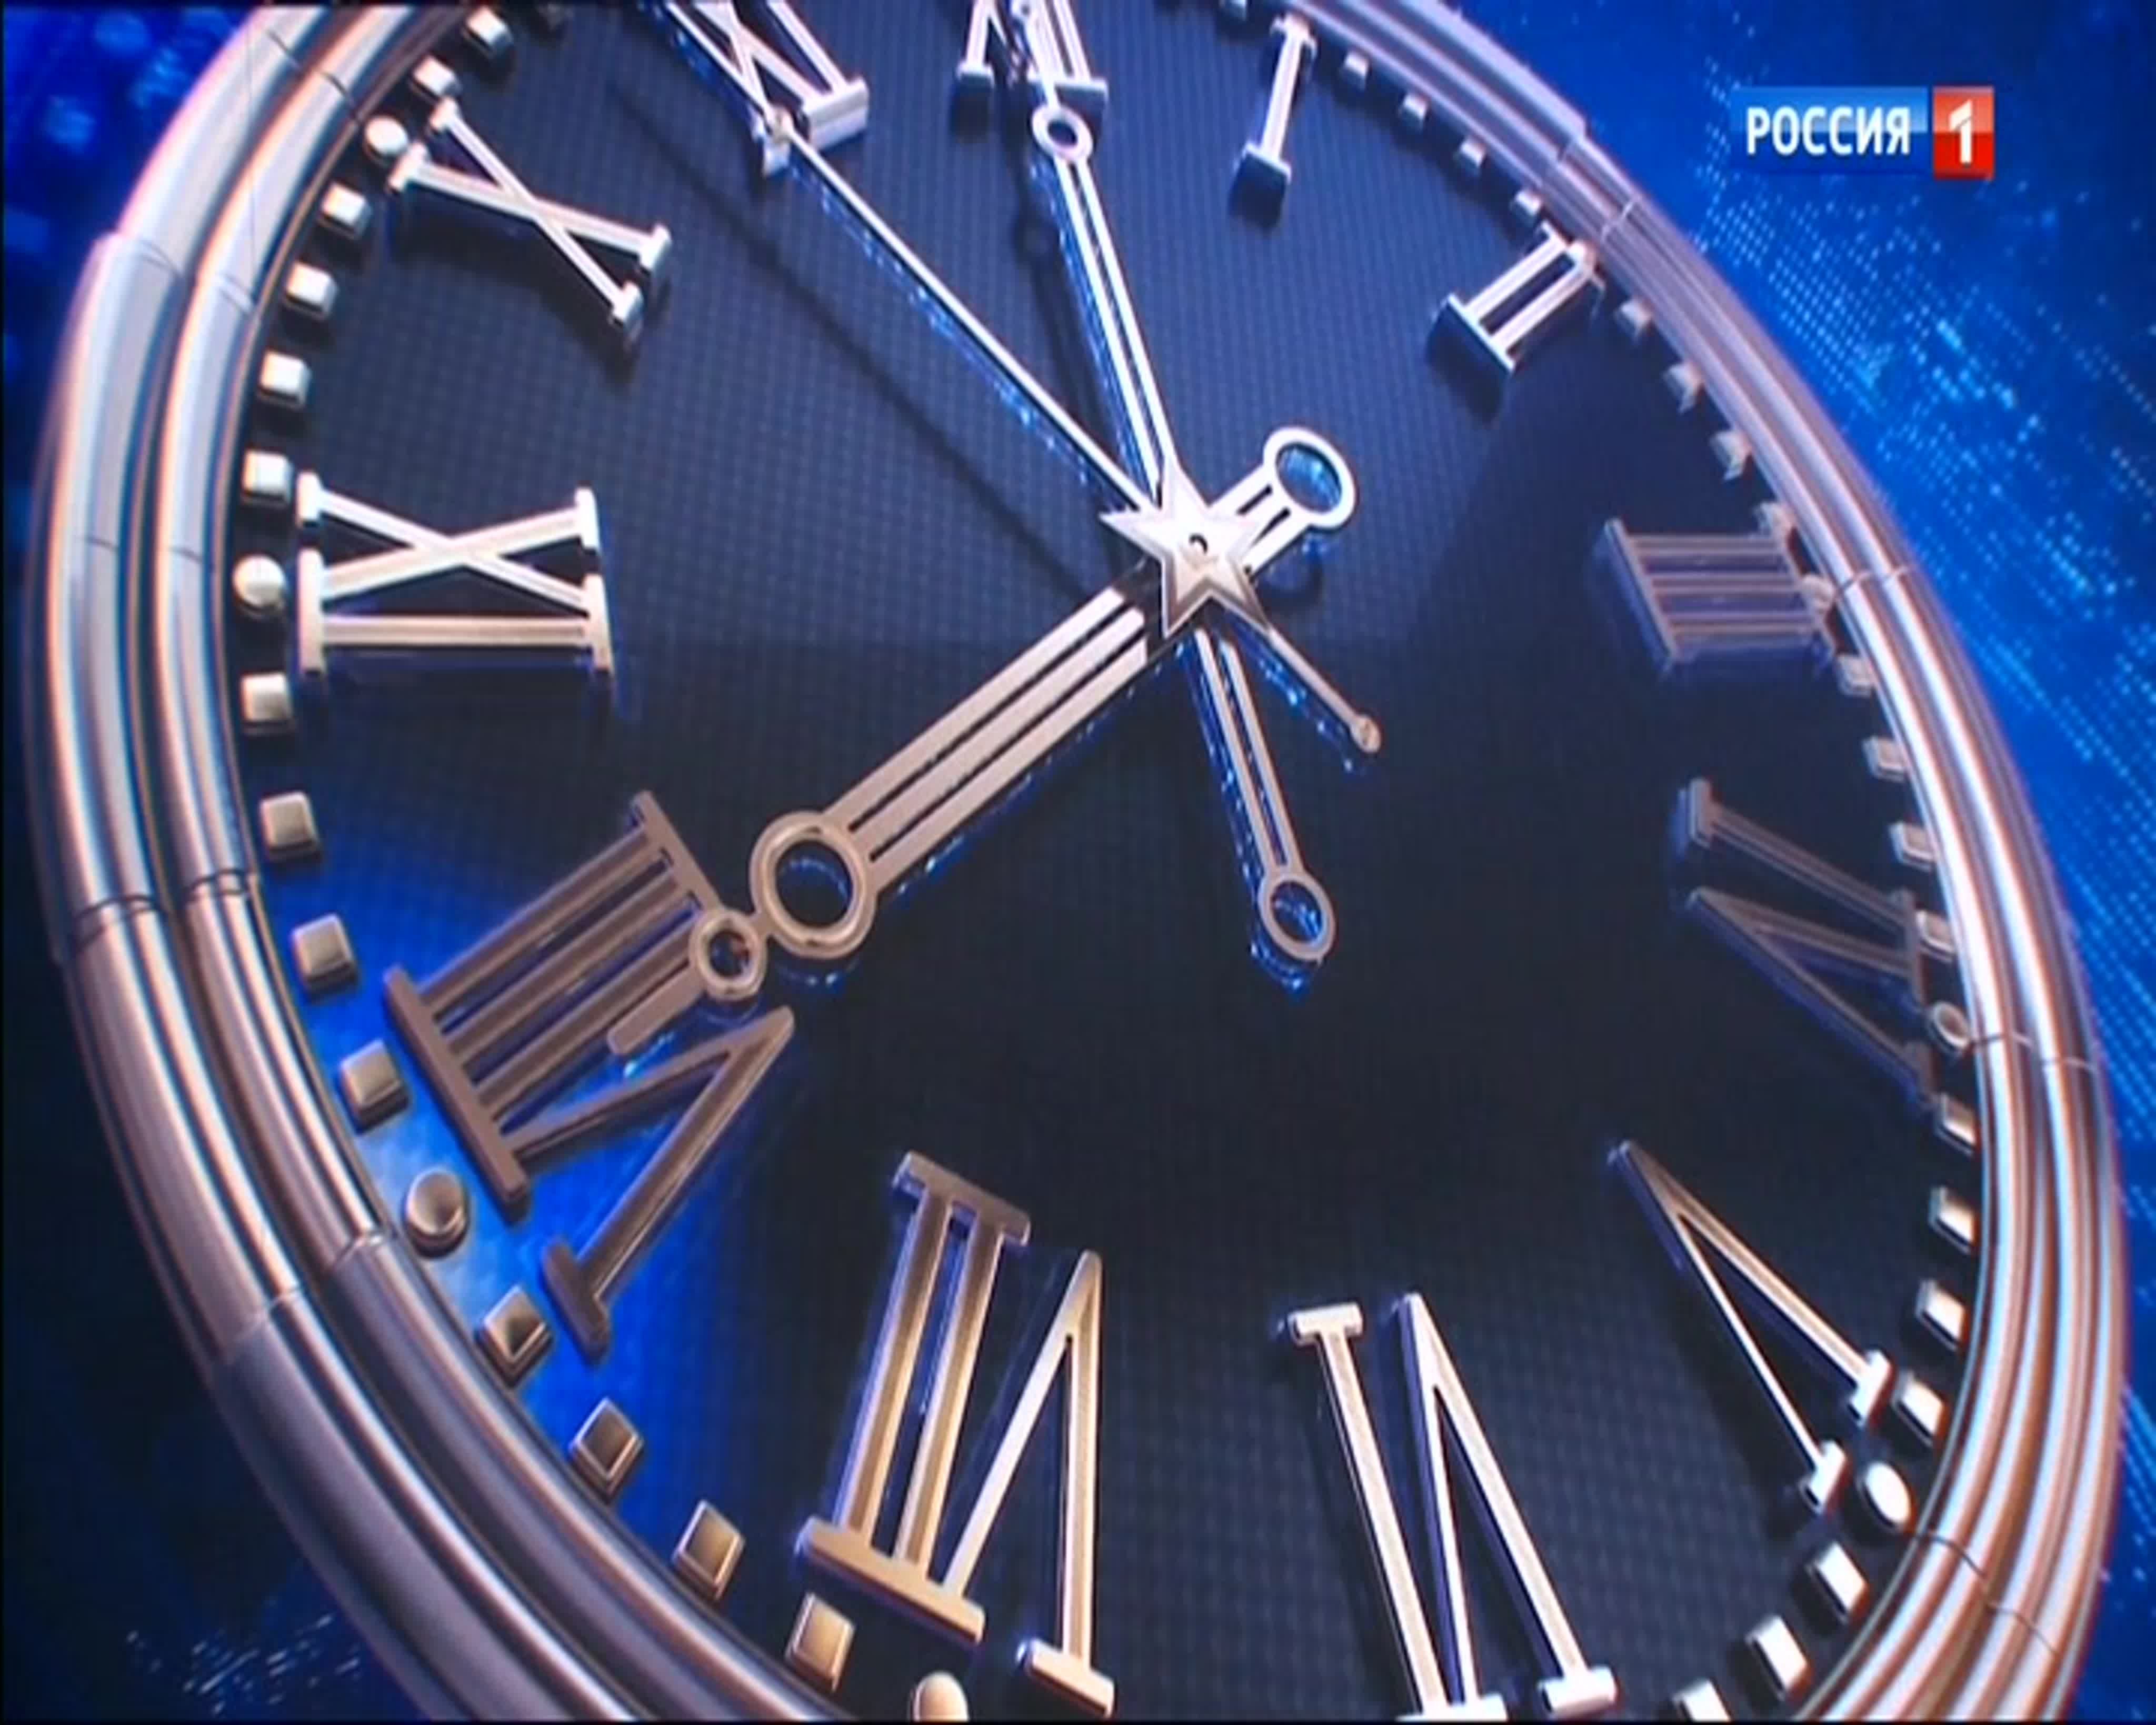 Телефон передачи время. Часы Россия 1 2021. Вести часы Россия 1. Часы Россия 1 2014. Часы Россия 1 2015.